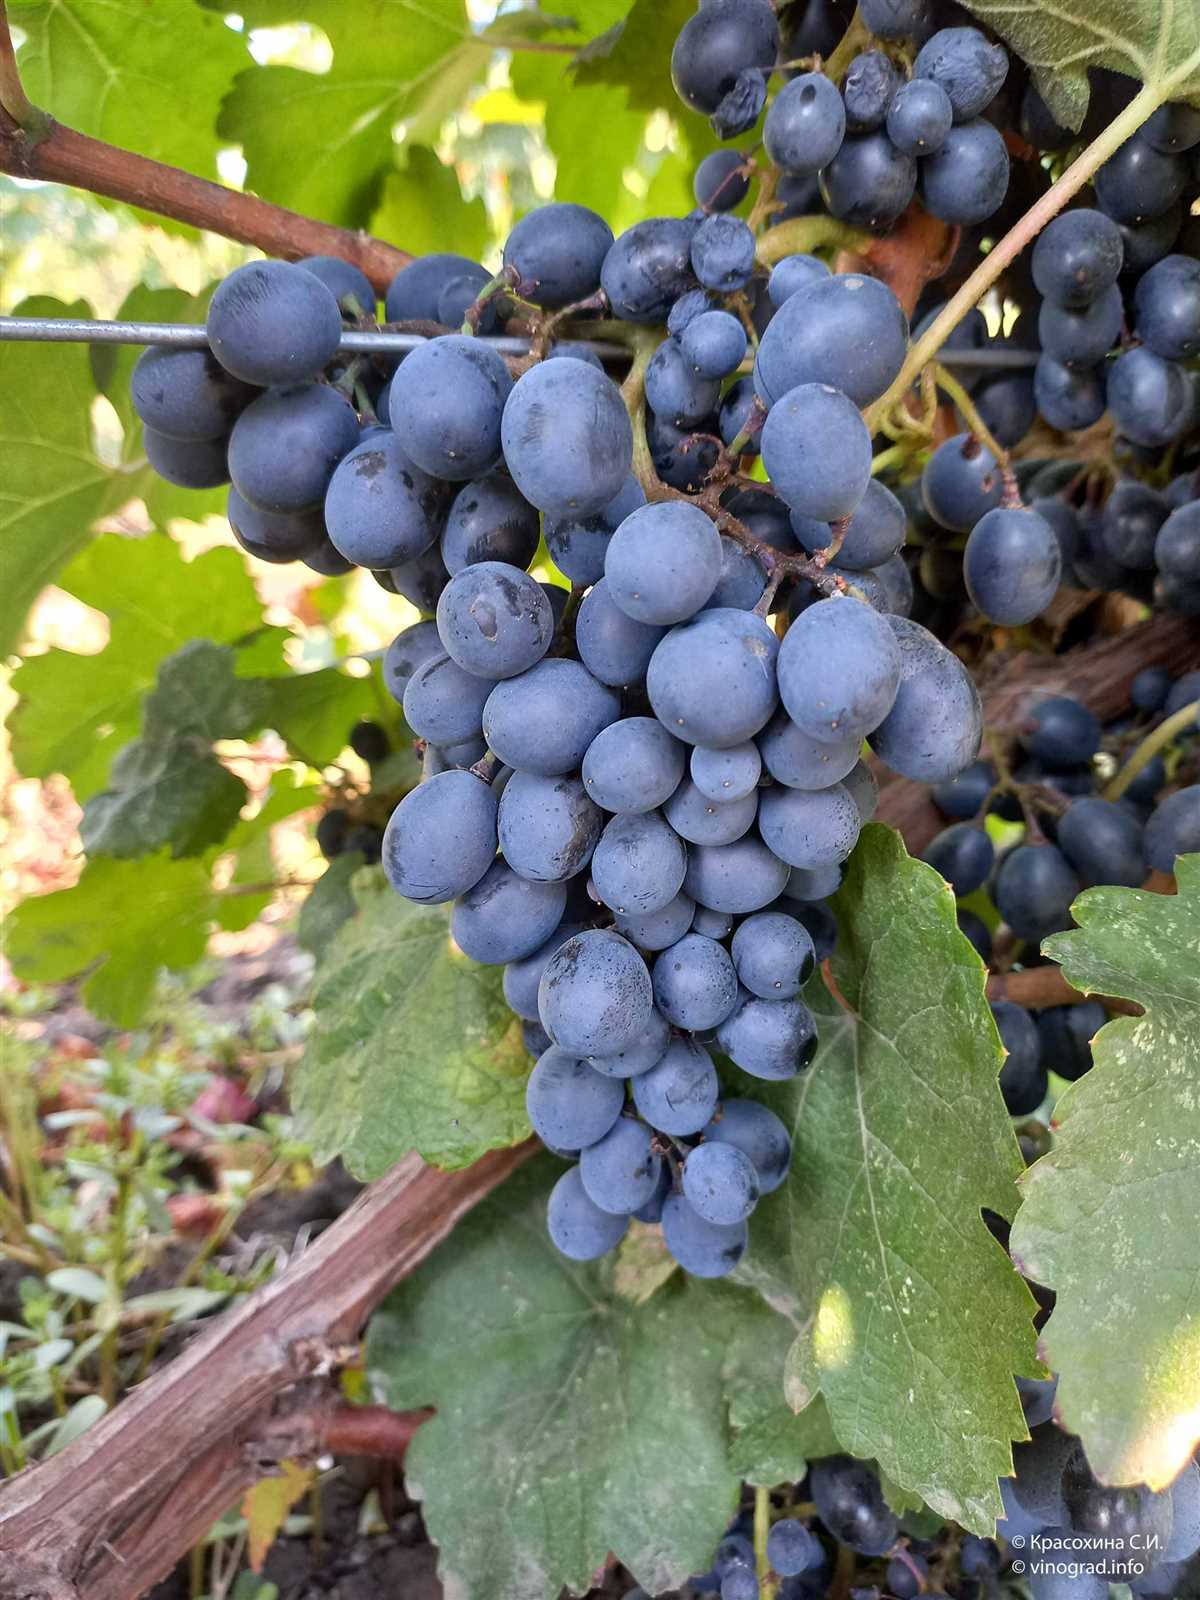 Сбор урожая и хранение винограда